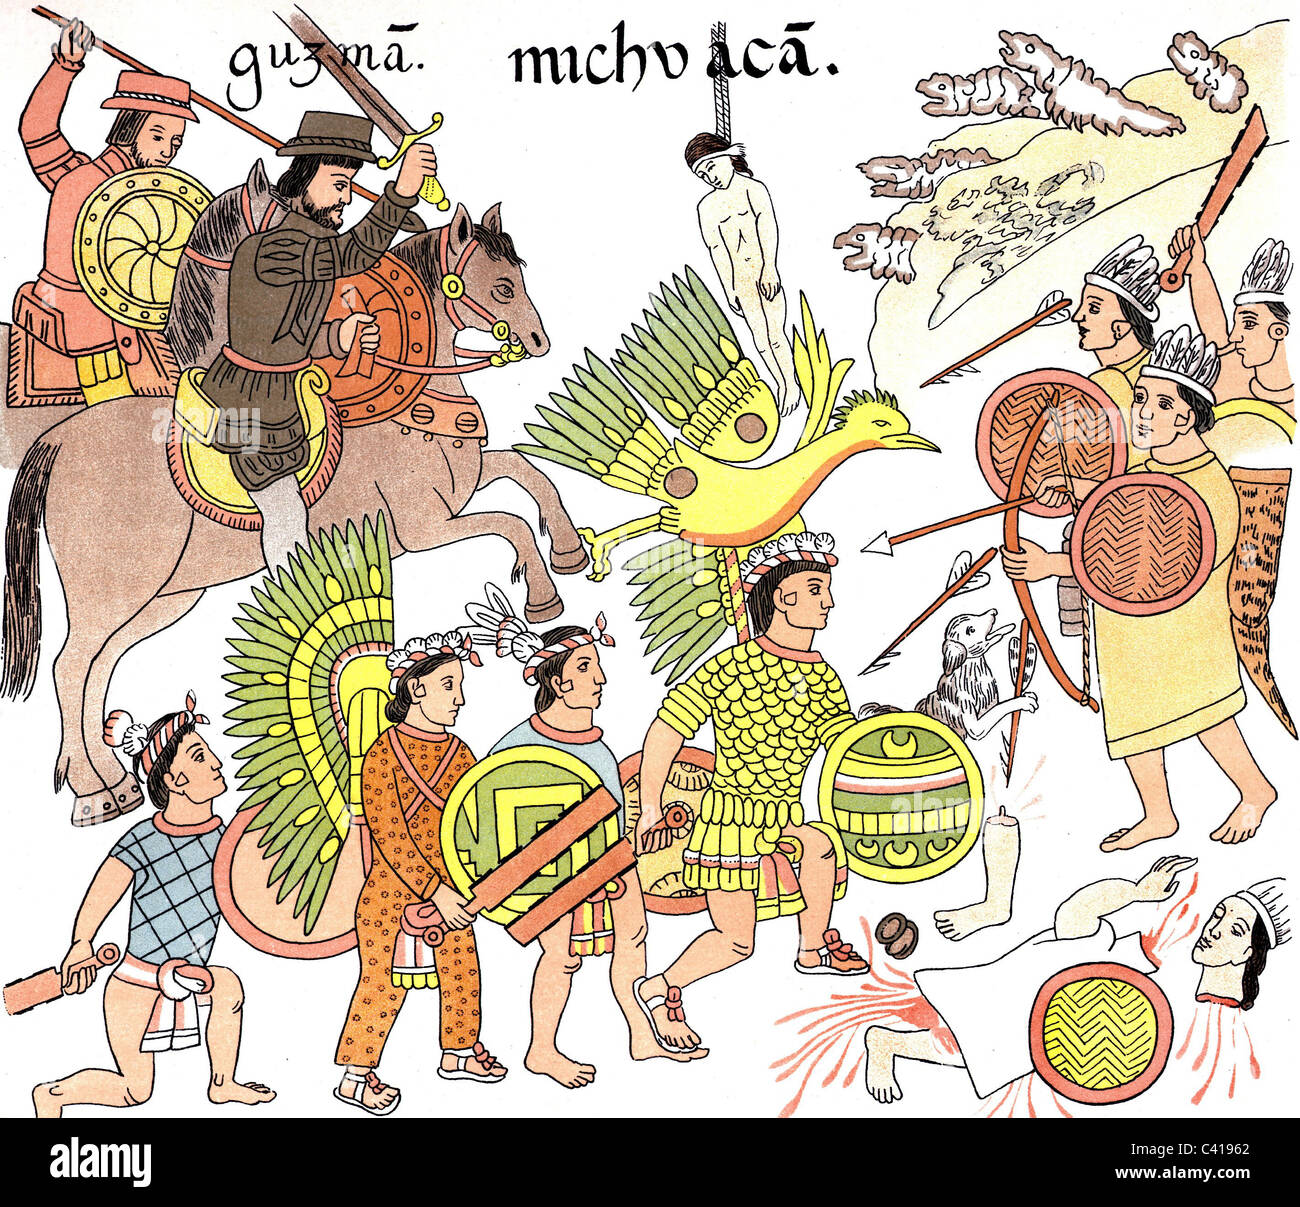 Geographie / Reisen, Mexiko, Aztekenreich, spanische Eroberer in Mexiko, nach aztekischen Zeichnungen, Mittelamerika, , Zusatzrechte-Clearences-nicht verfügbar Stockfoto